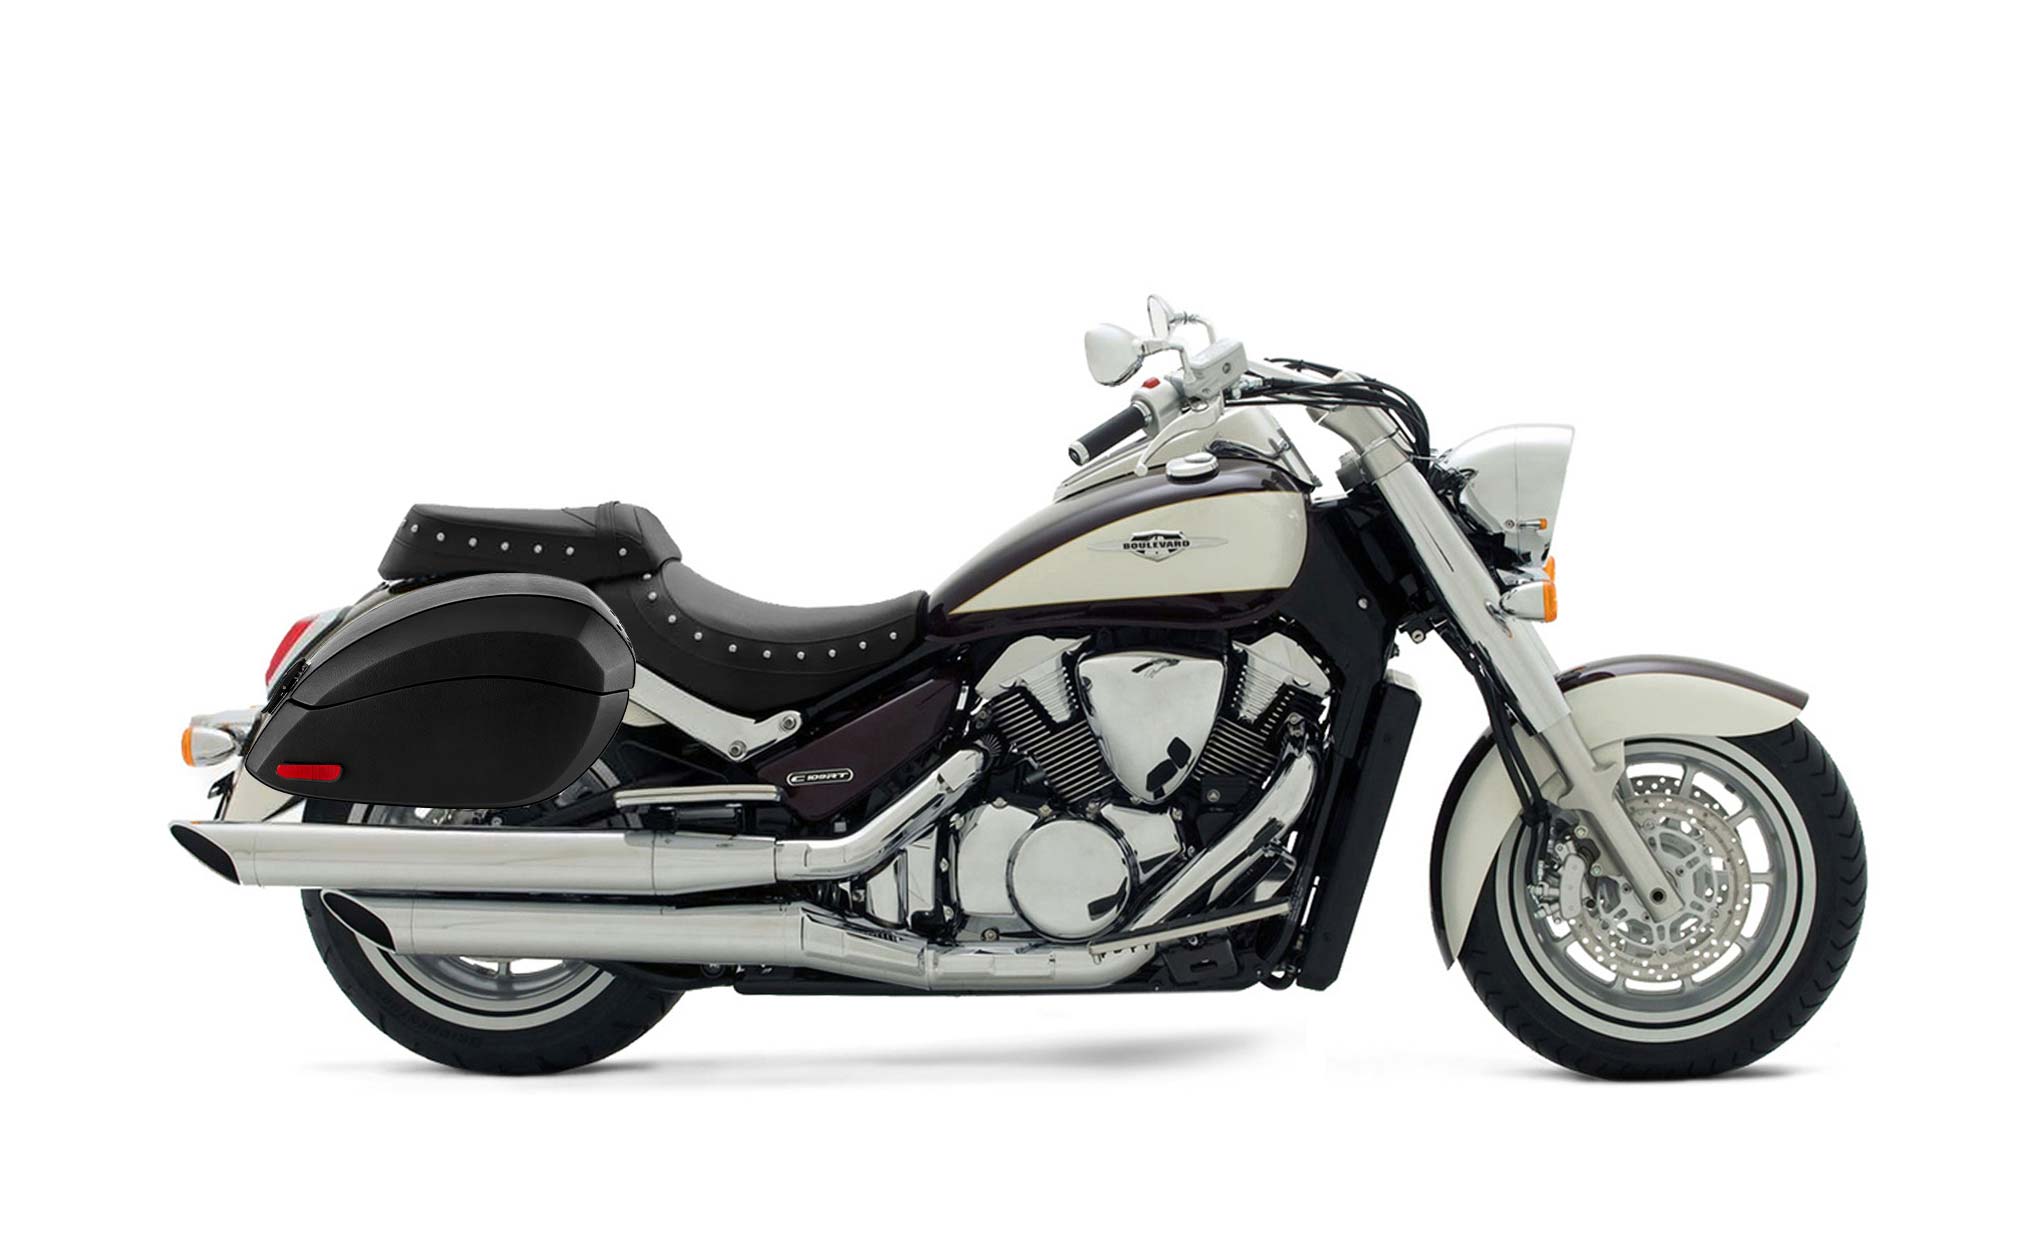 Viking Phantom Large Suzuki Boulevard C109 Leather Wrapped Motorcycle Hard Saddlebags on Bike Photo @expand